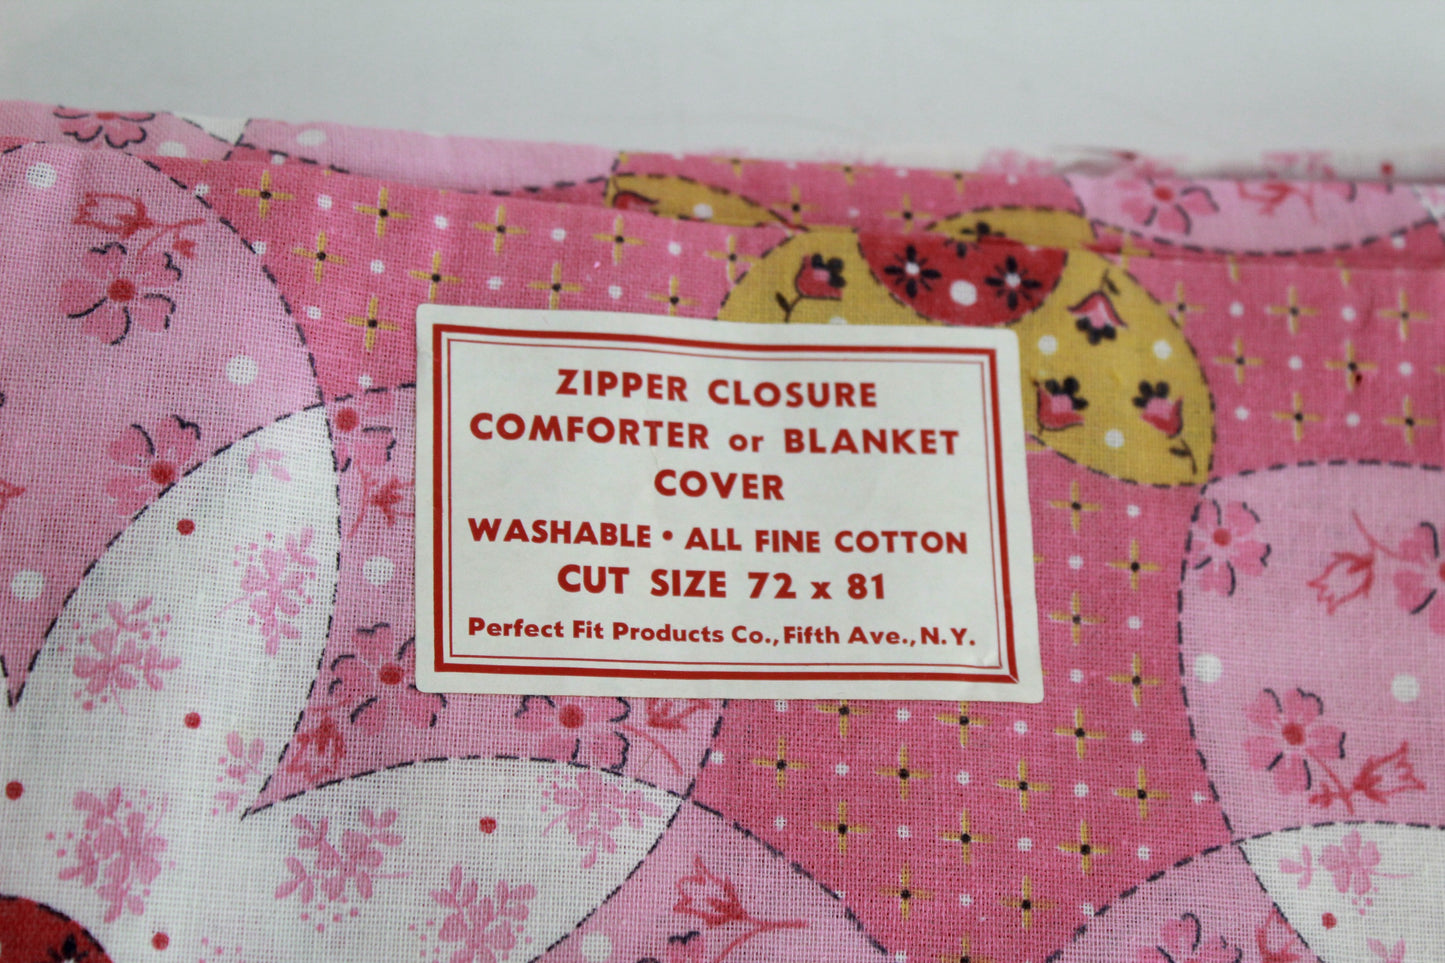 1960s quilt print cotton duvet cover pink floral vintage textiles